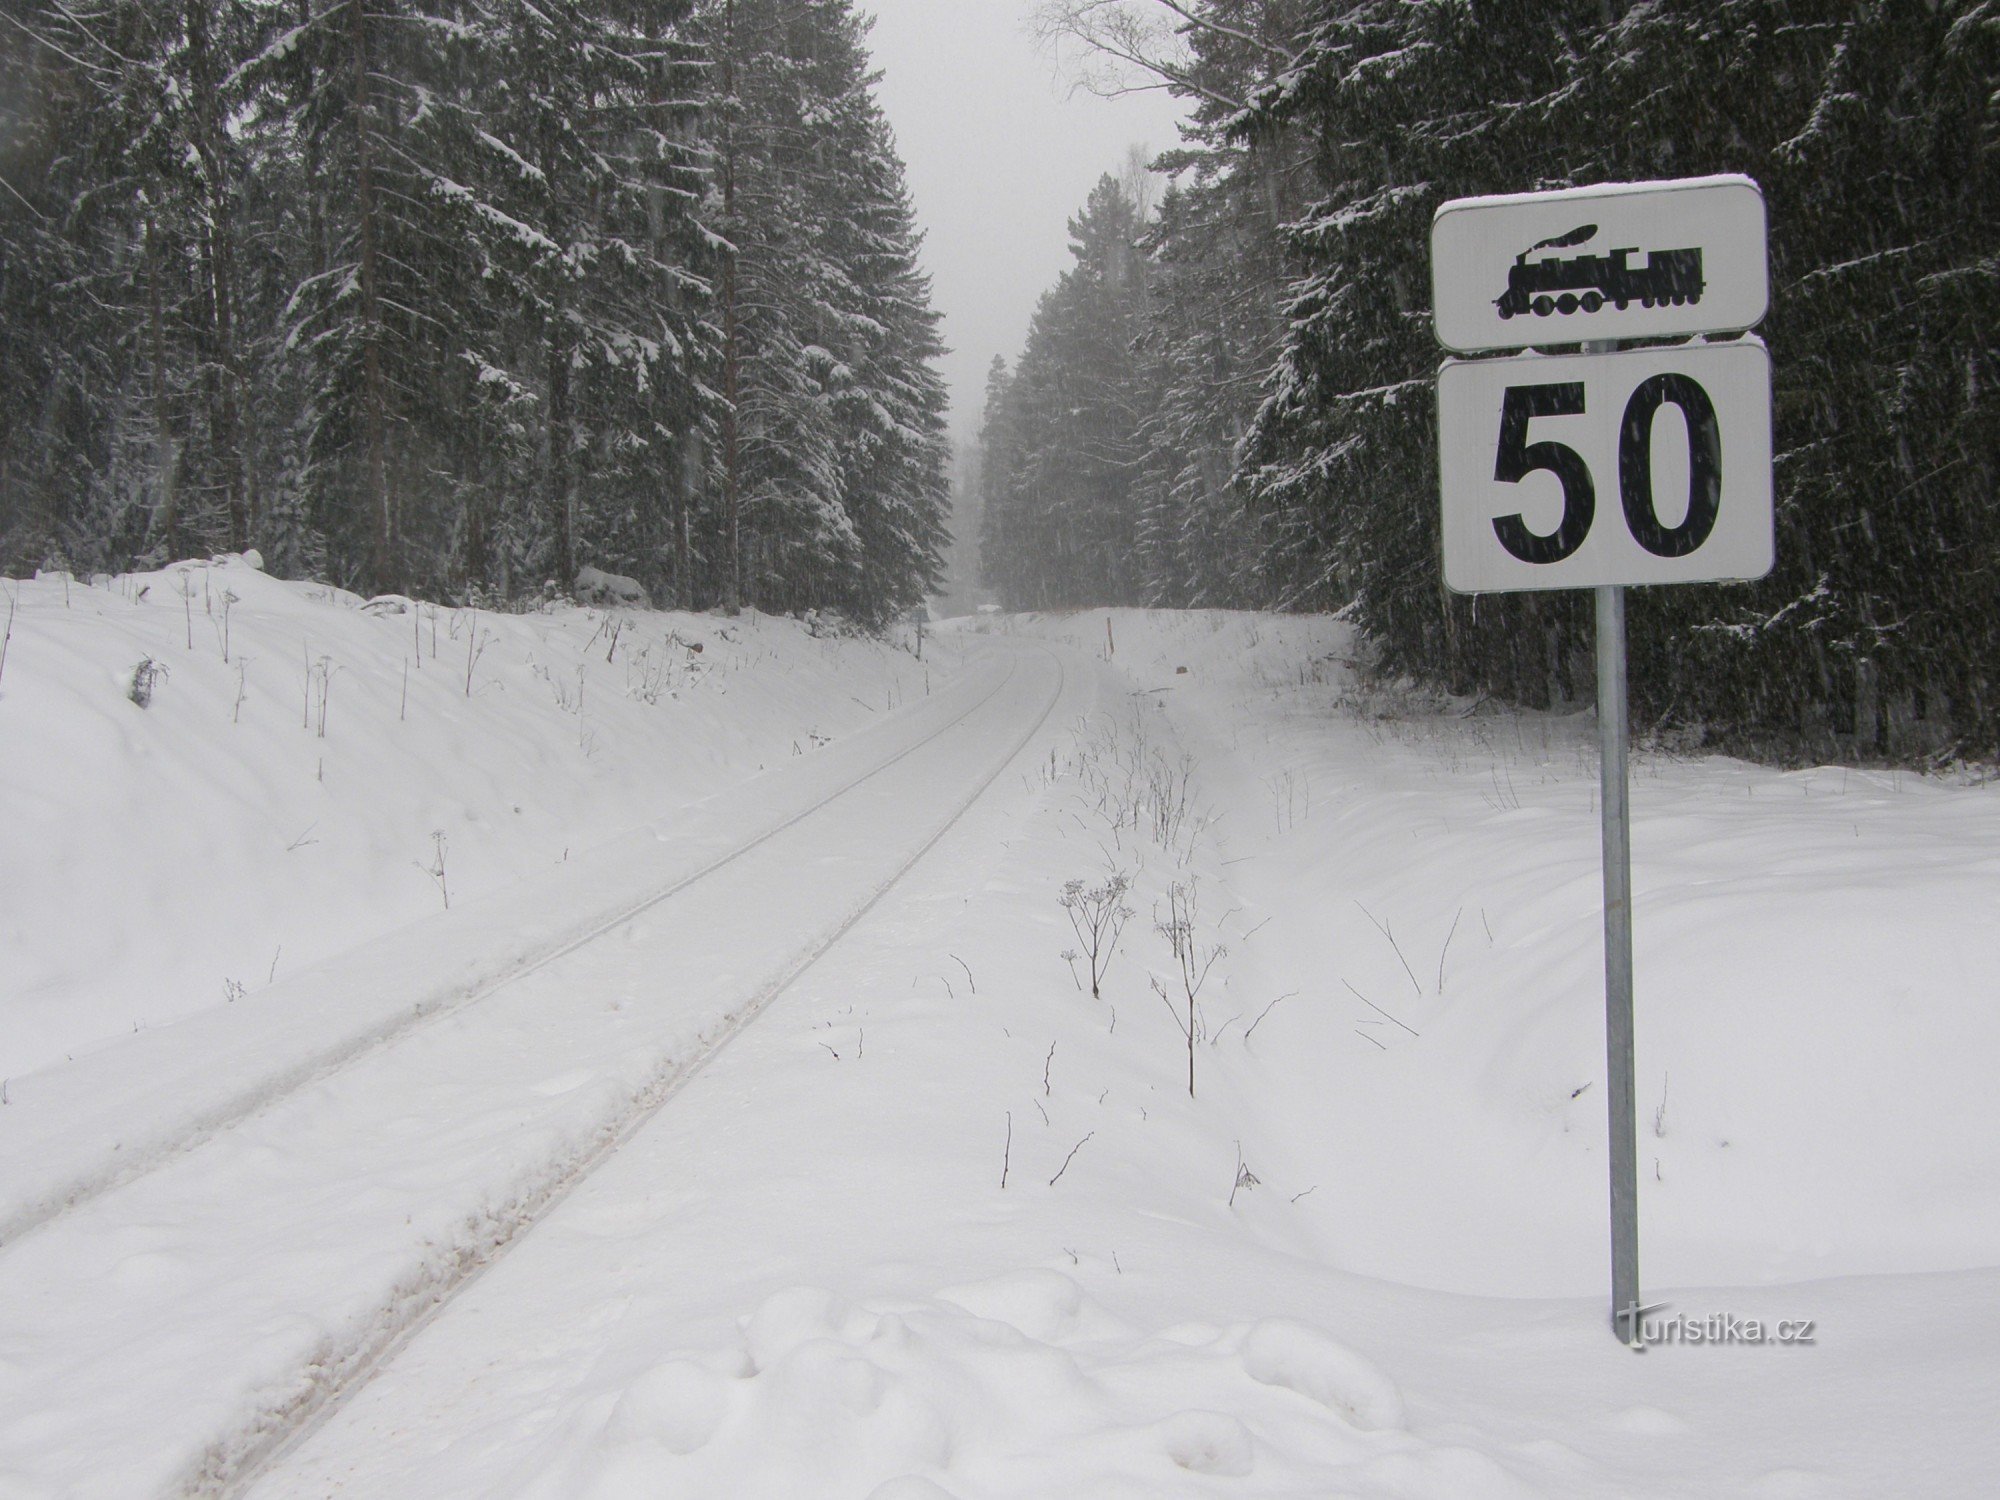 De sporen gaan door de sneeuw richting de Beierse grens